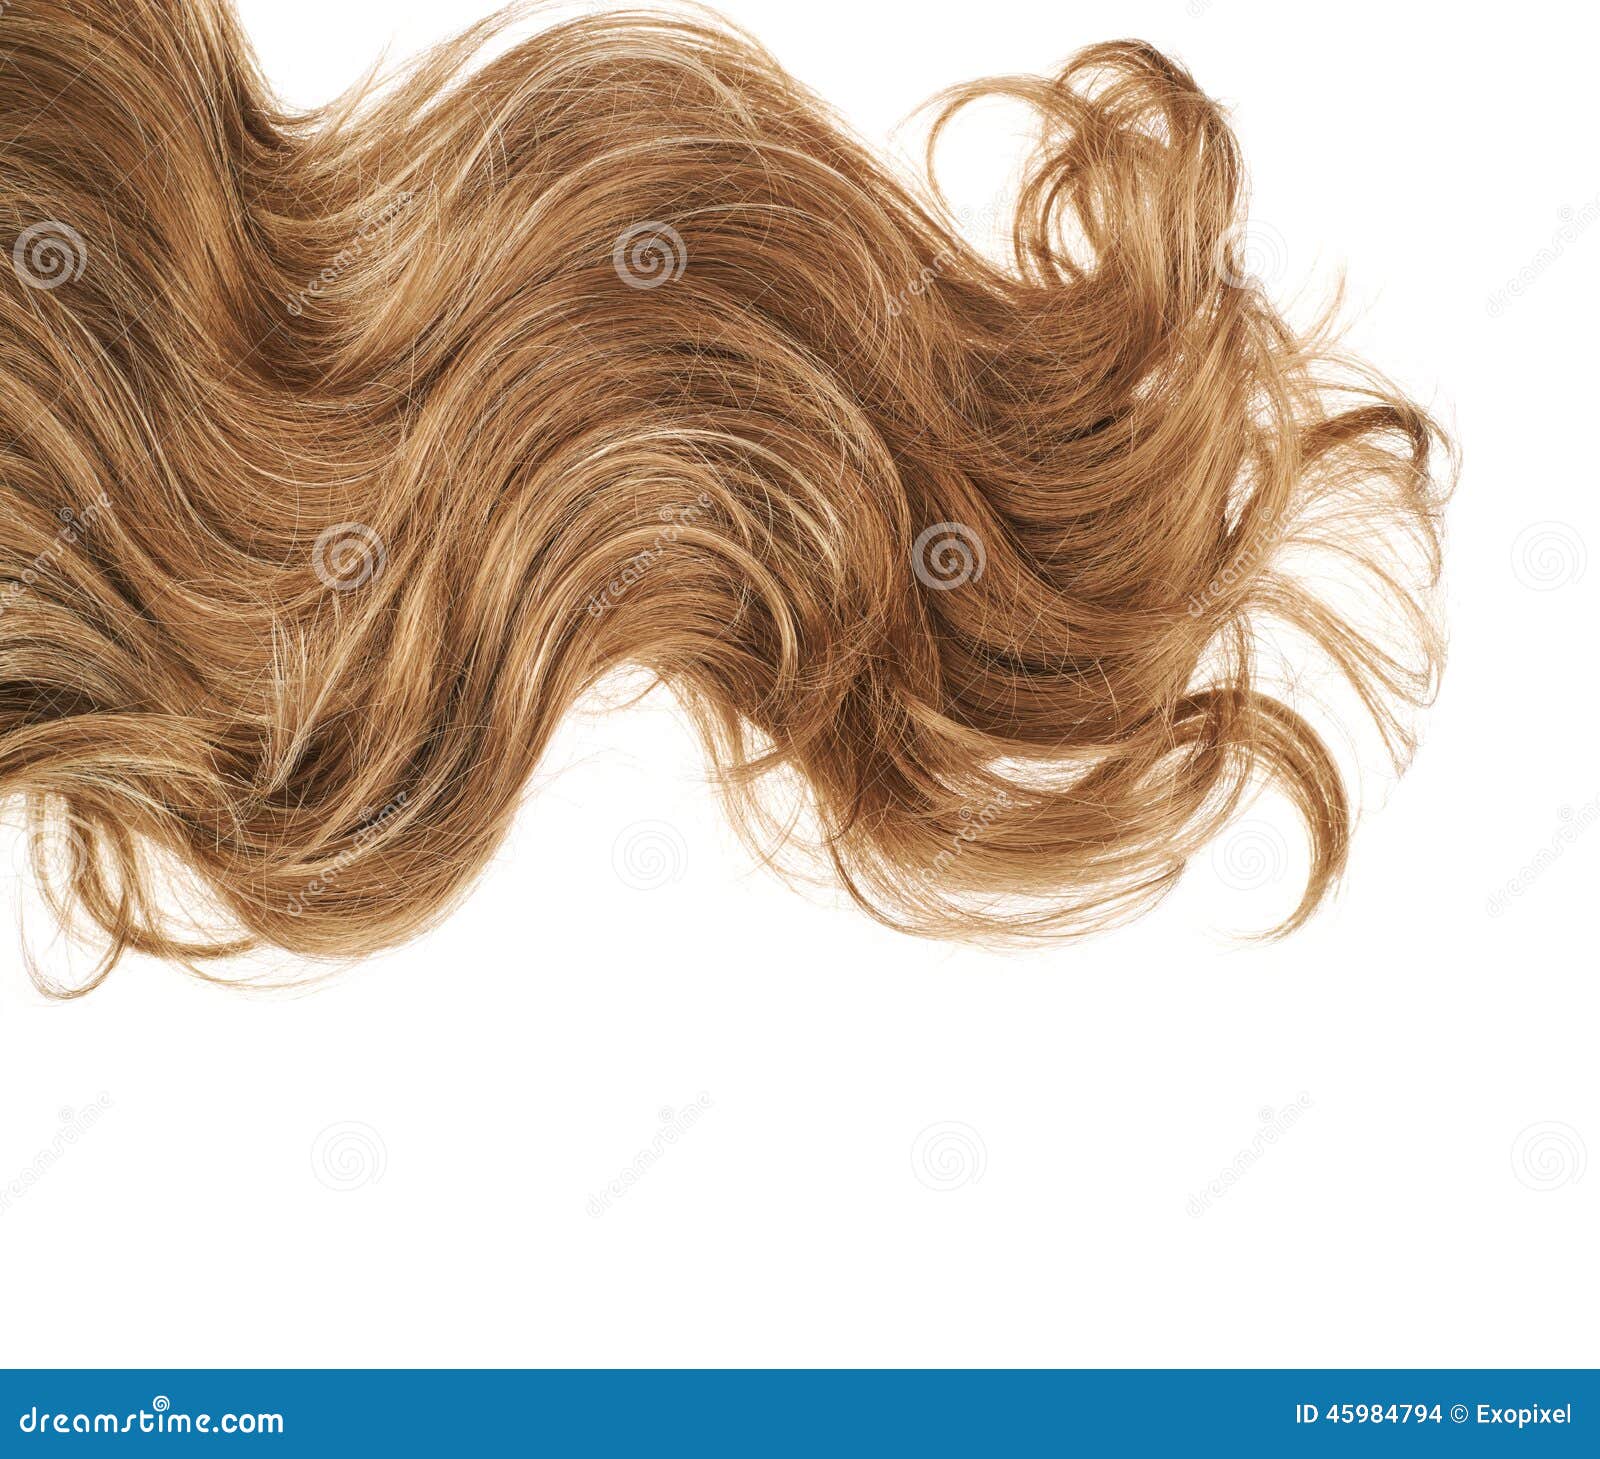 人的 孩子 女孩 面对 金发 长长的头发 树 出 性质图片下载 - 觅知网